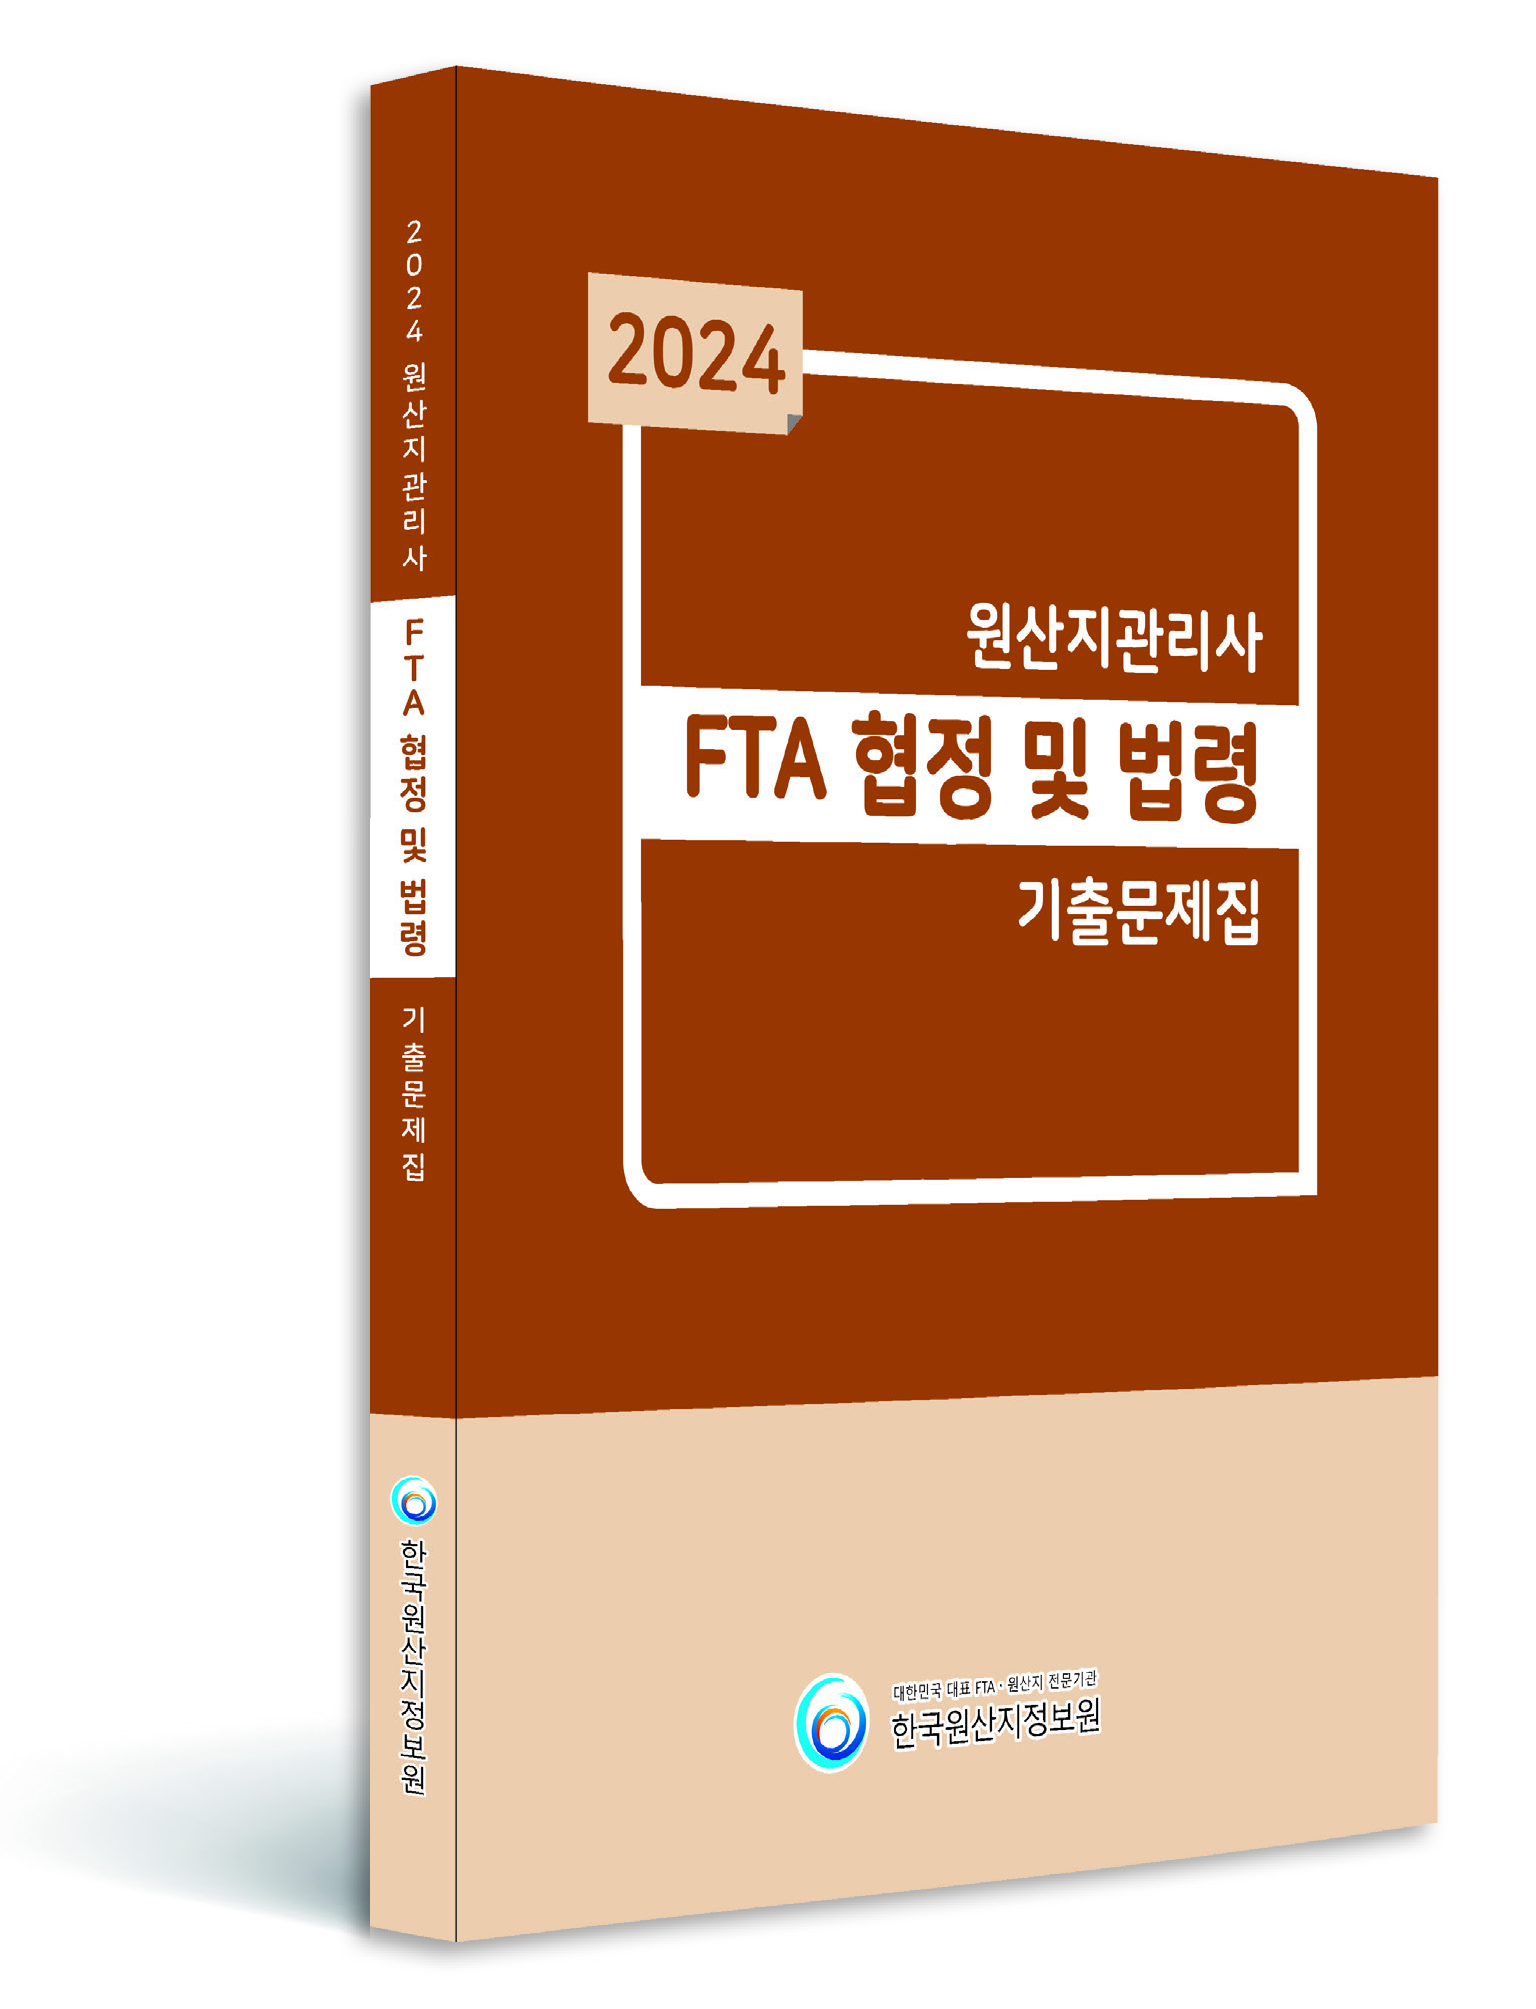 2024 원산지관리사 기출문제해설집 (FTA협정및법령) 이미지